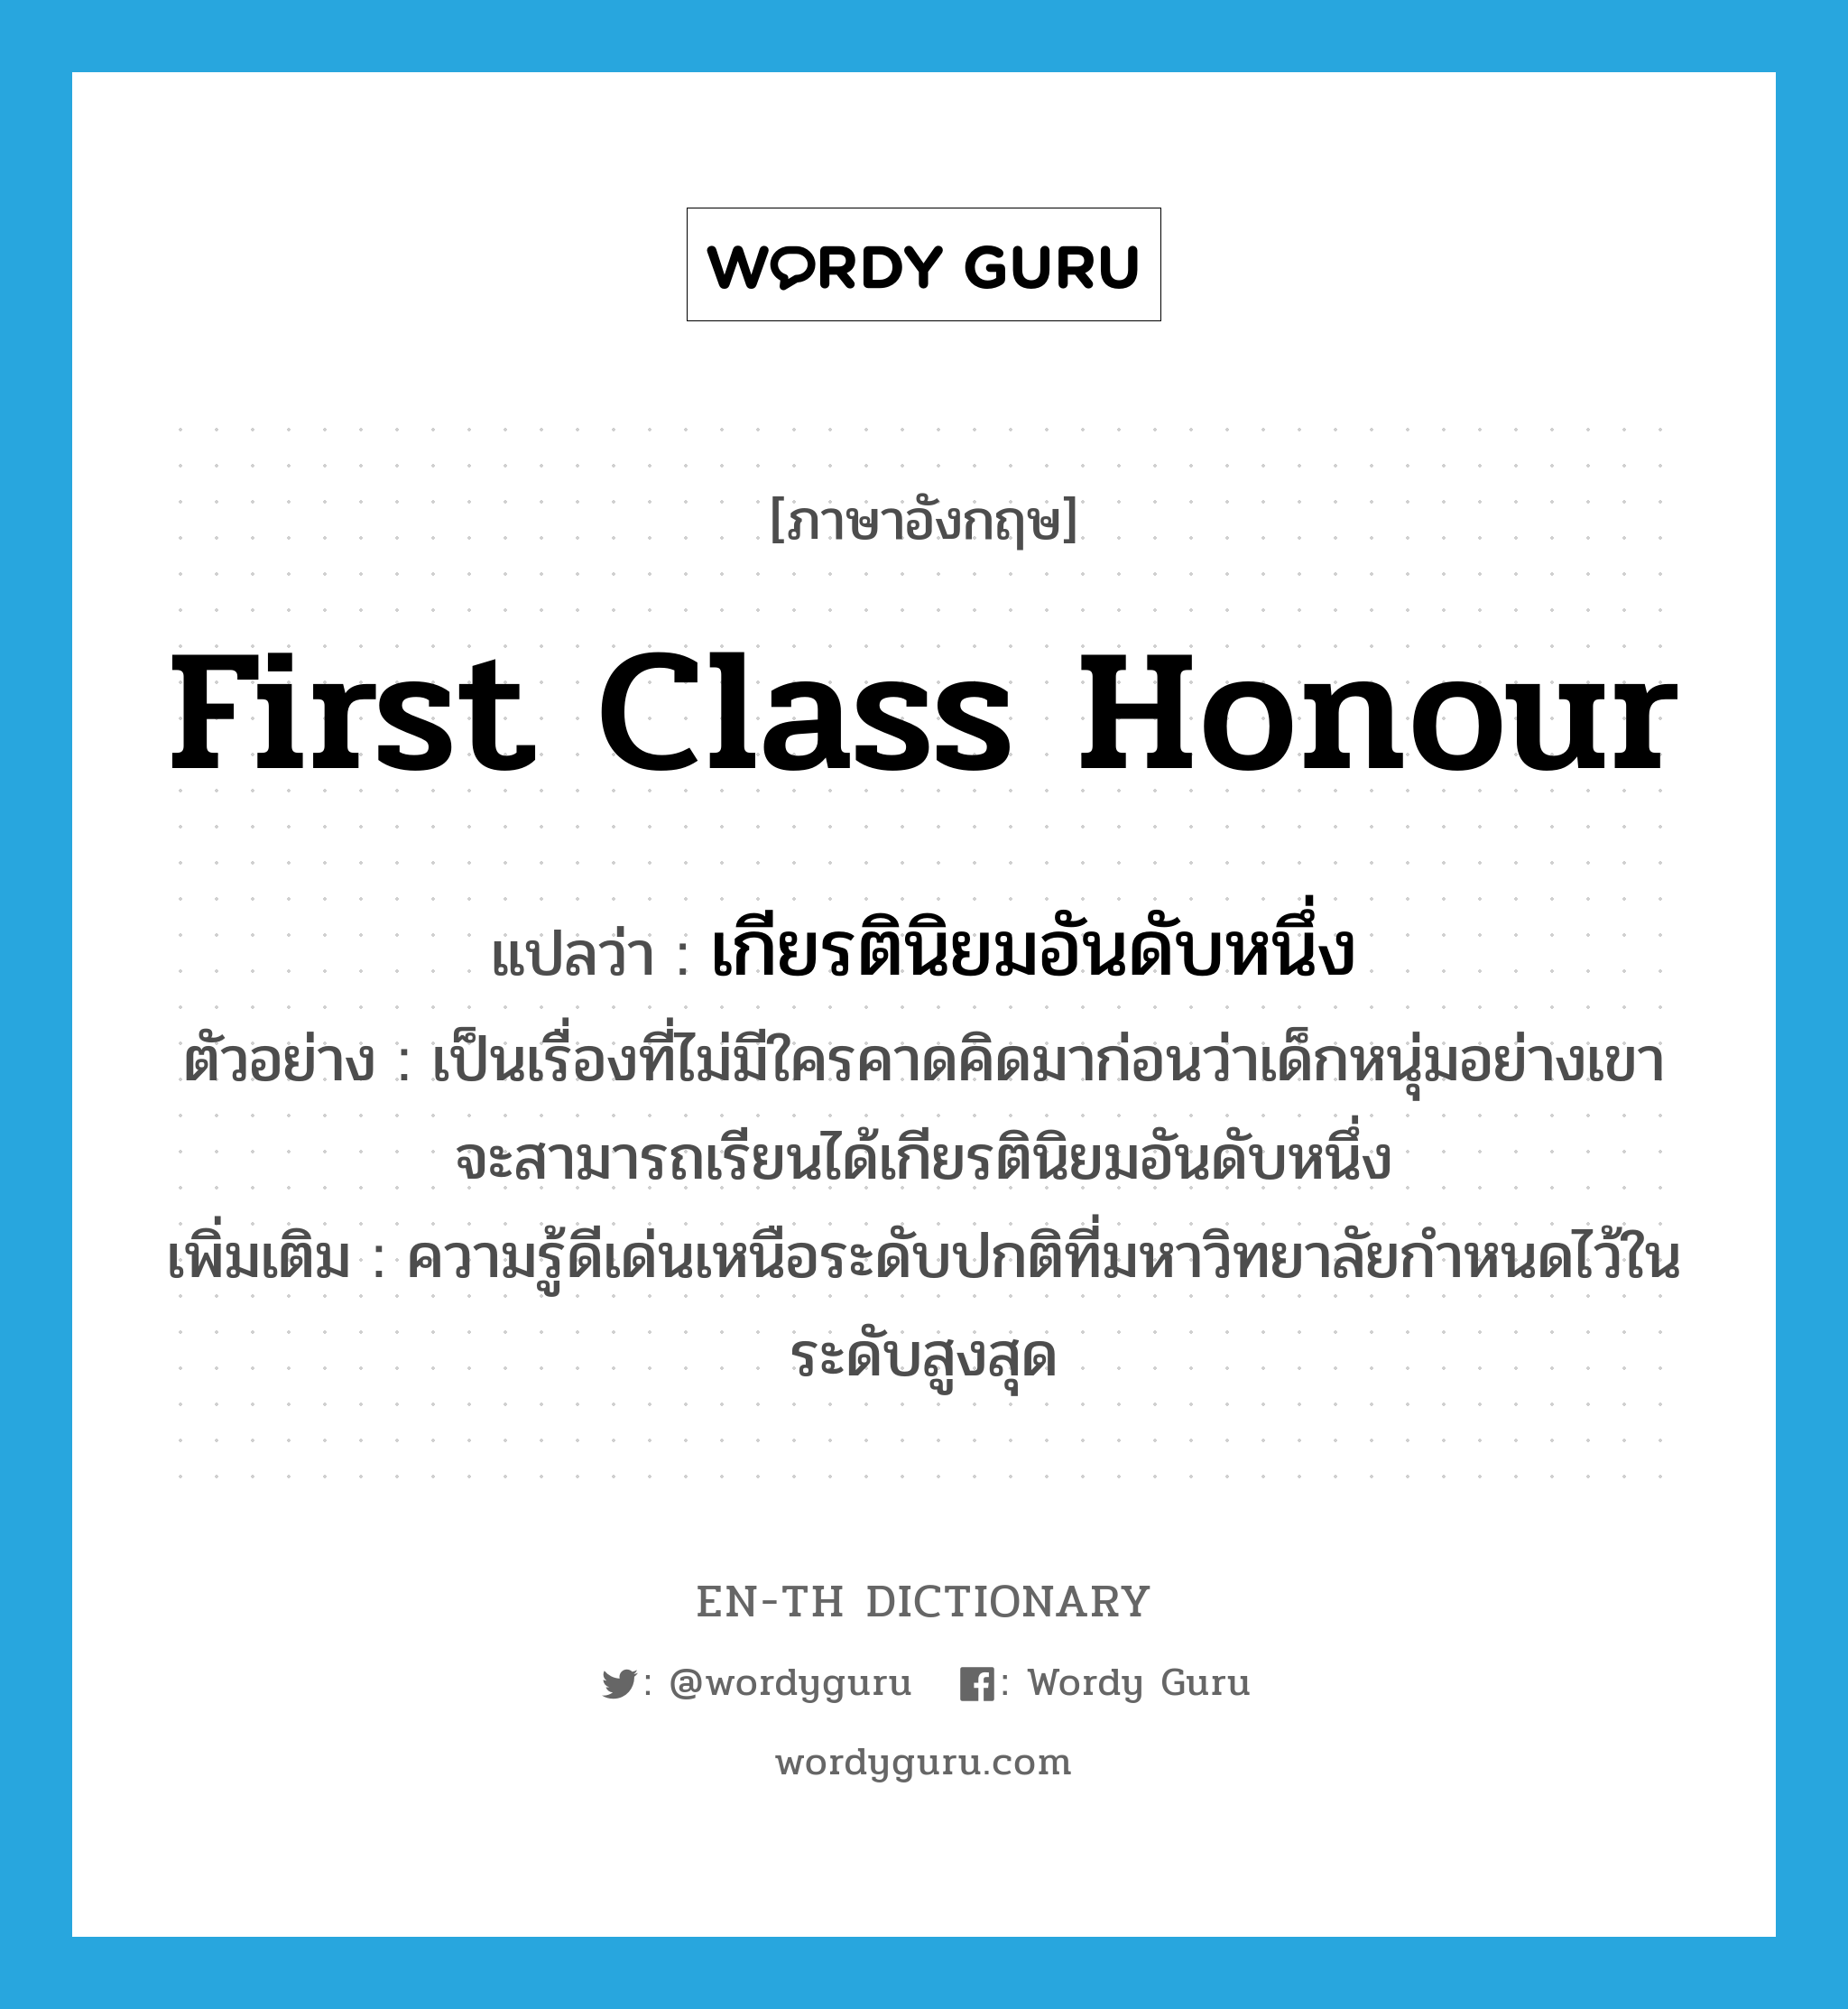 first class honour แปลว่า?, คำศัพท์ภาษาอังกฤษ first class honour แปลว่า เกียรตินิยมอันดับหนึ่ง ประเภท N ตัวอย่าง เป็นเรื่องที่ไม่มีใครคาดคิดมาก่อนว่าเด็กหนุ่มอย่างเขา จะสามารถเรียนได้เกียรตินิยมอันดับหนึ่ง เพิ่มเติม ความรู้ดีเด่นเหนือระดับปกติที่มหาวิทยาลัยกำหนดไว้ในระดับสูงสุด หมวด N